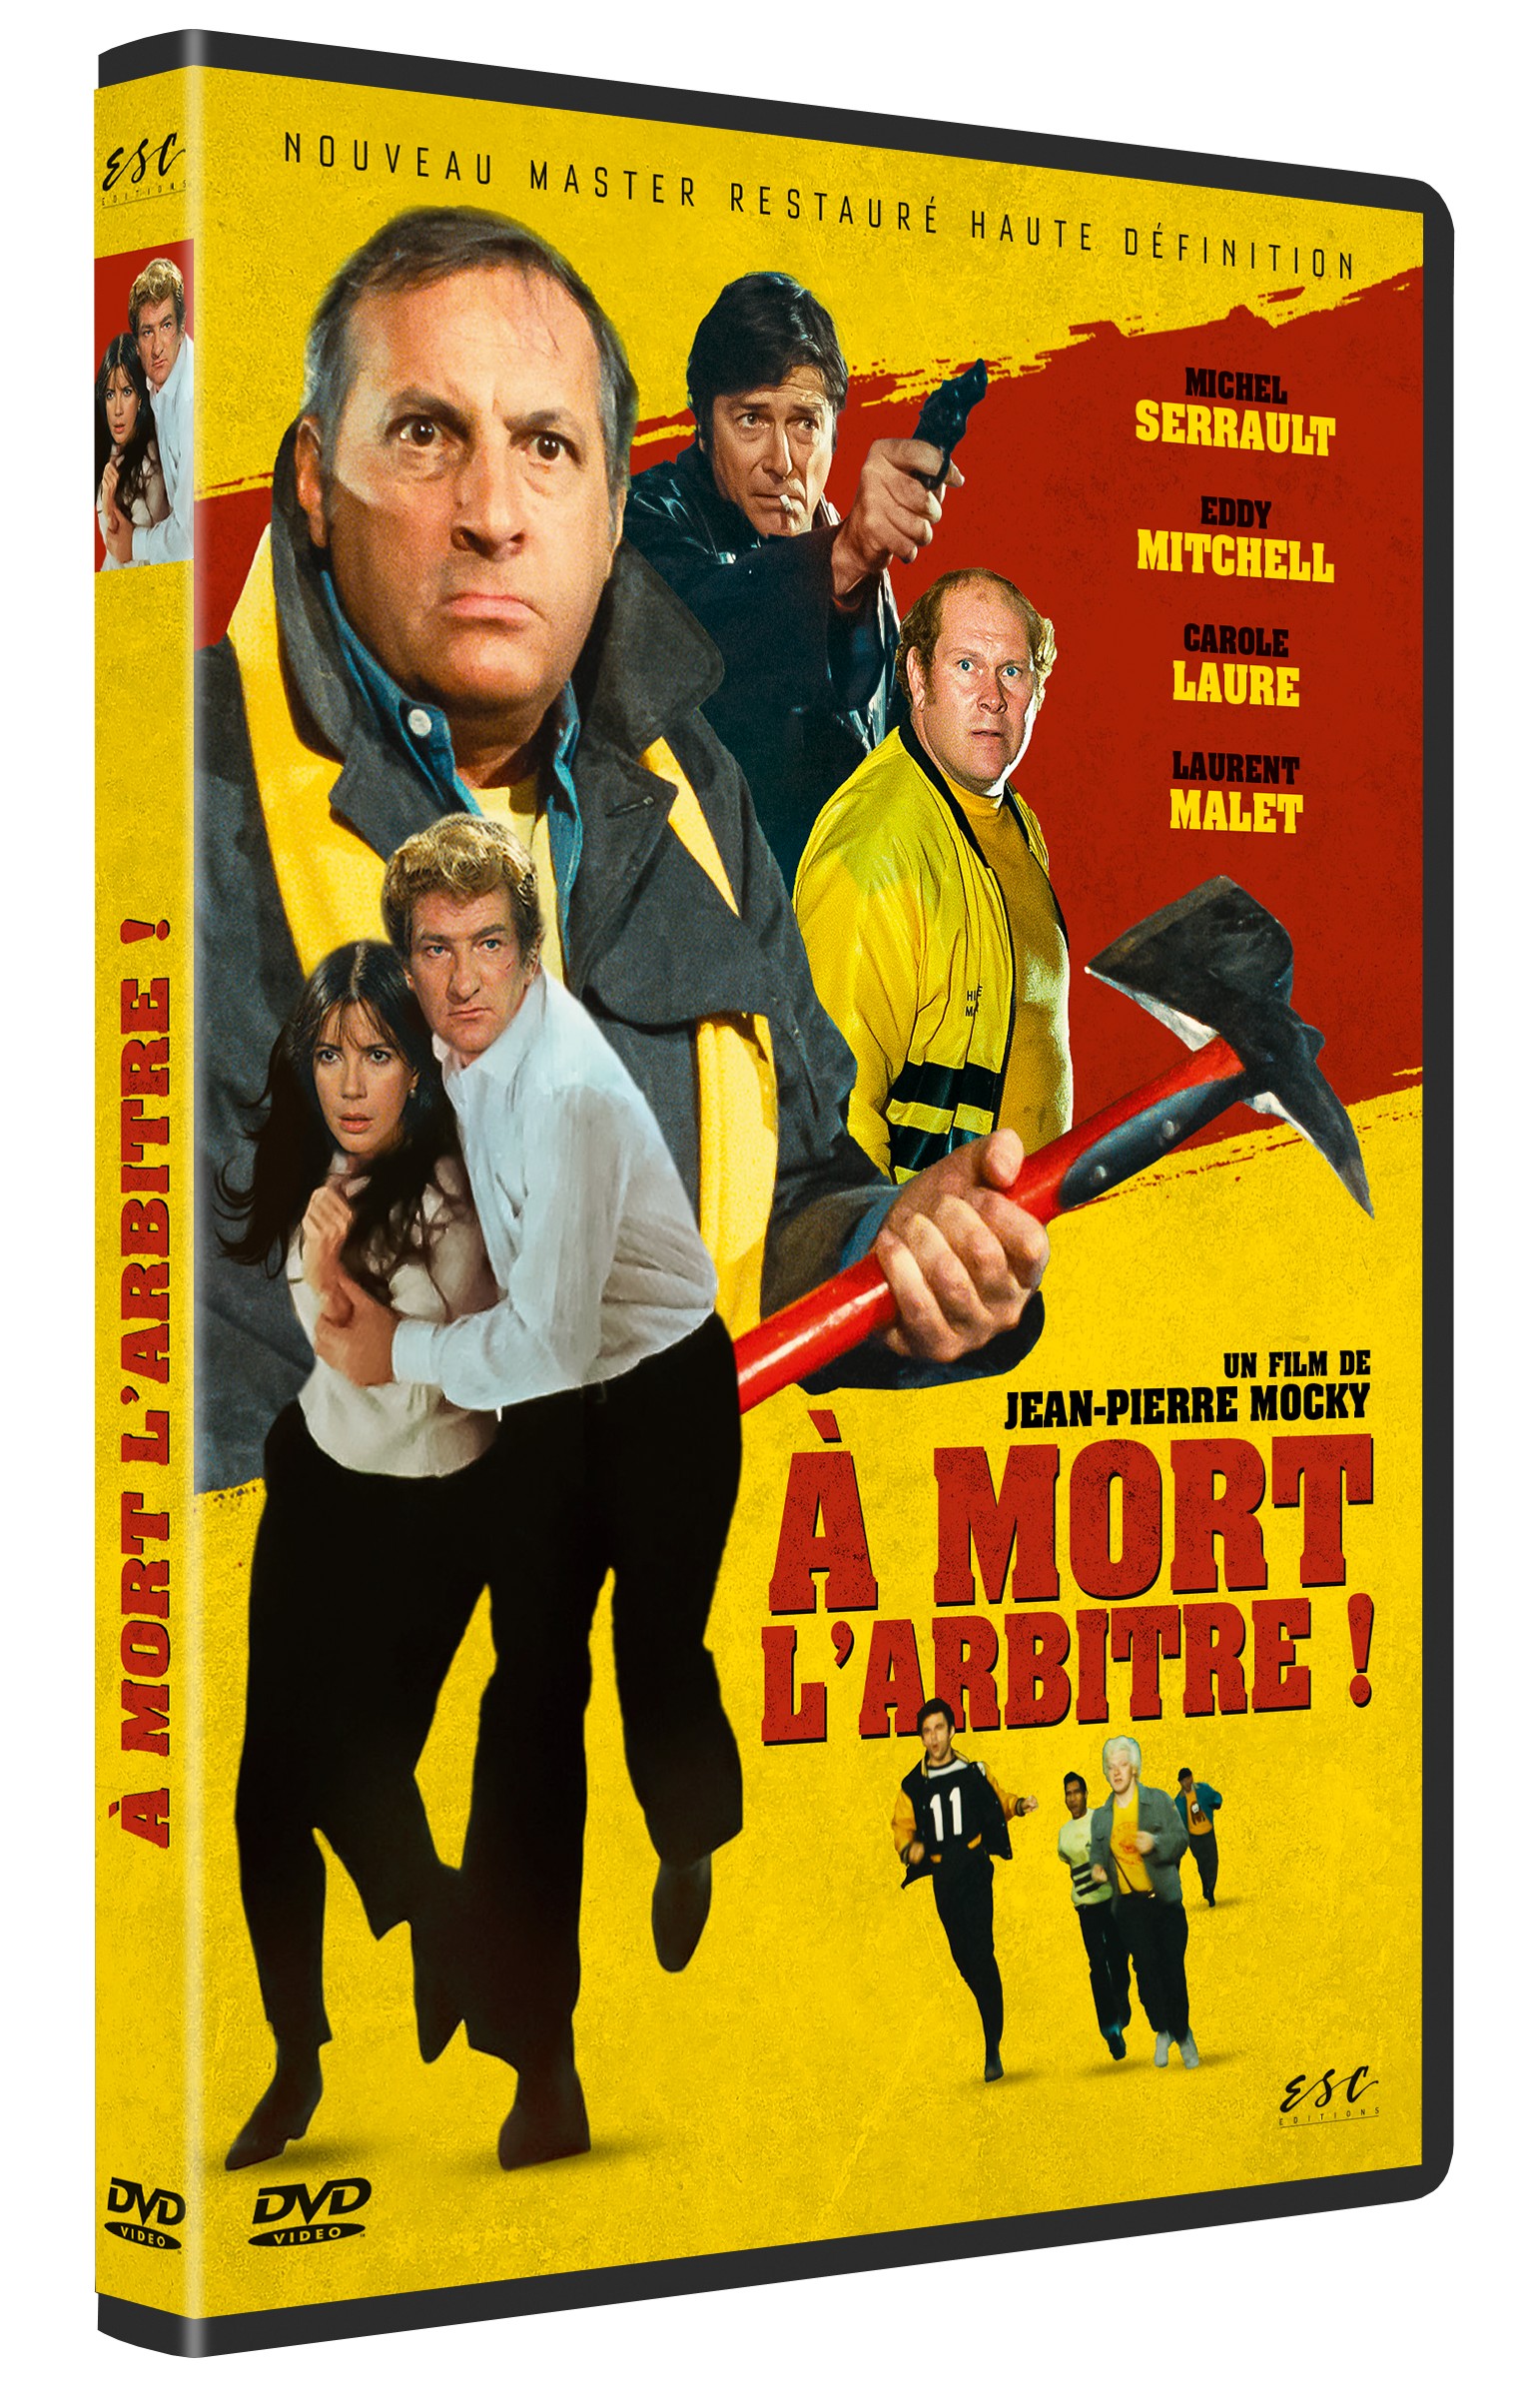 A MORT L'ARBITRE - DVD